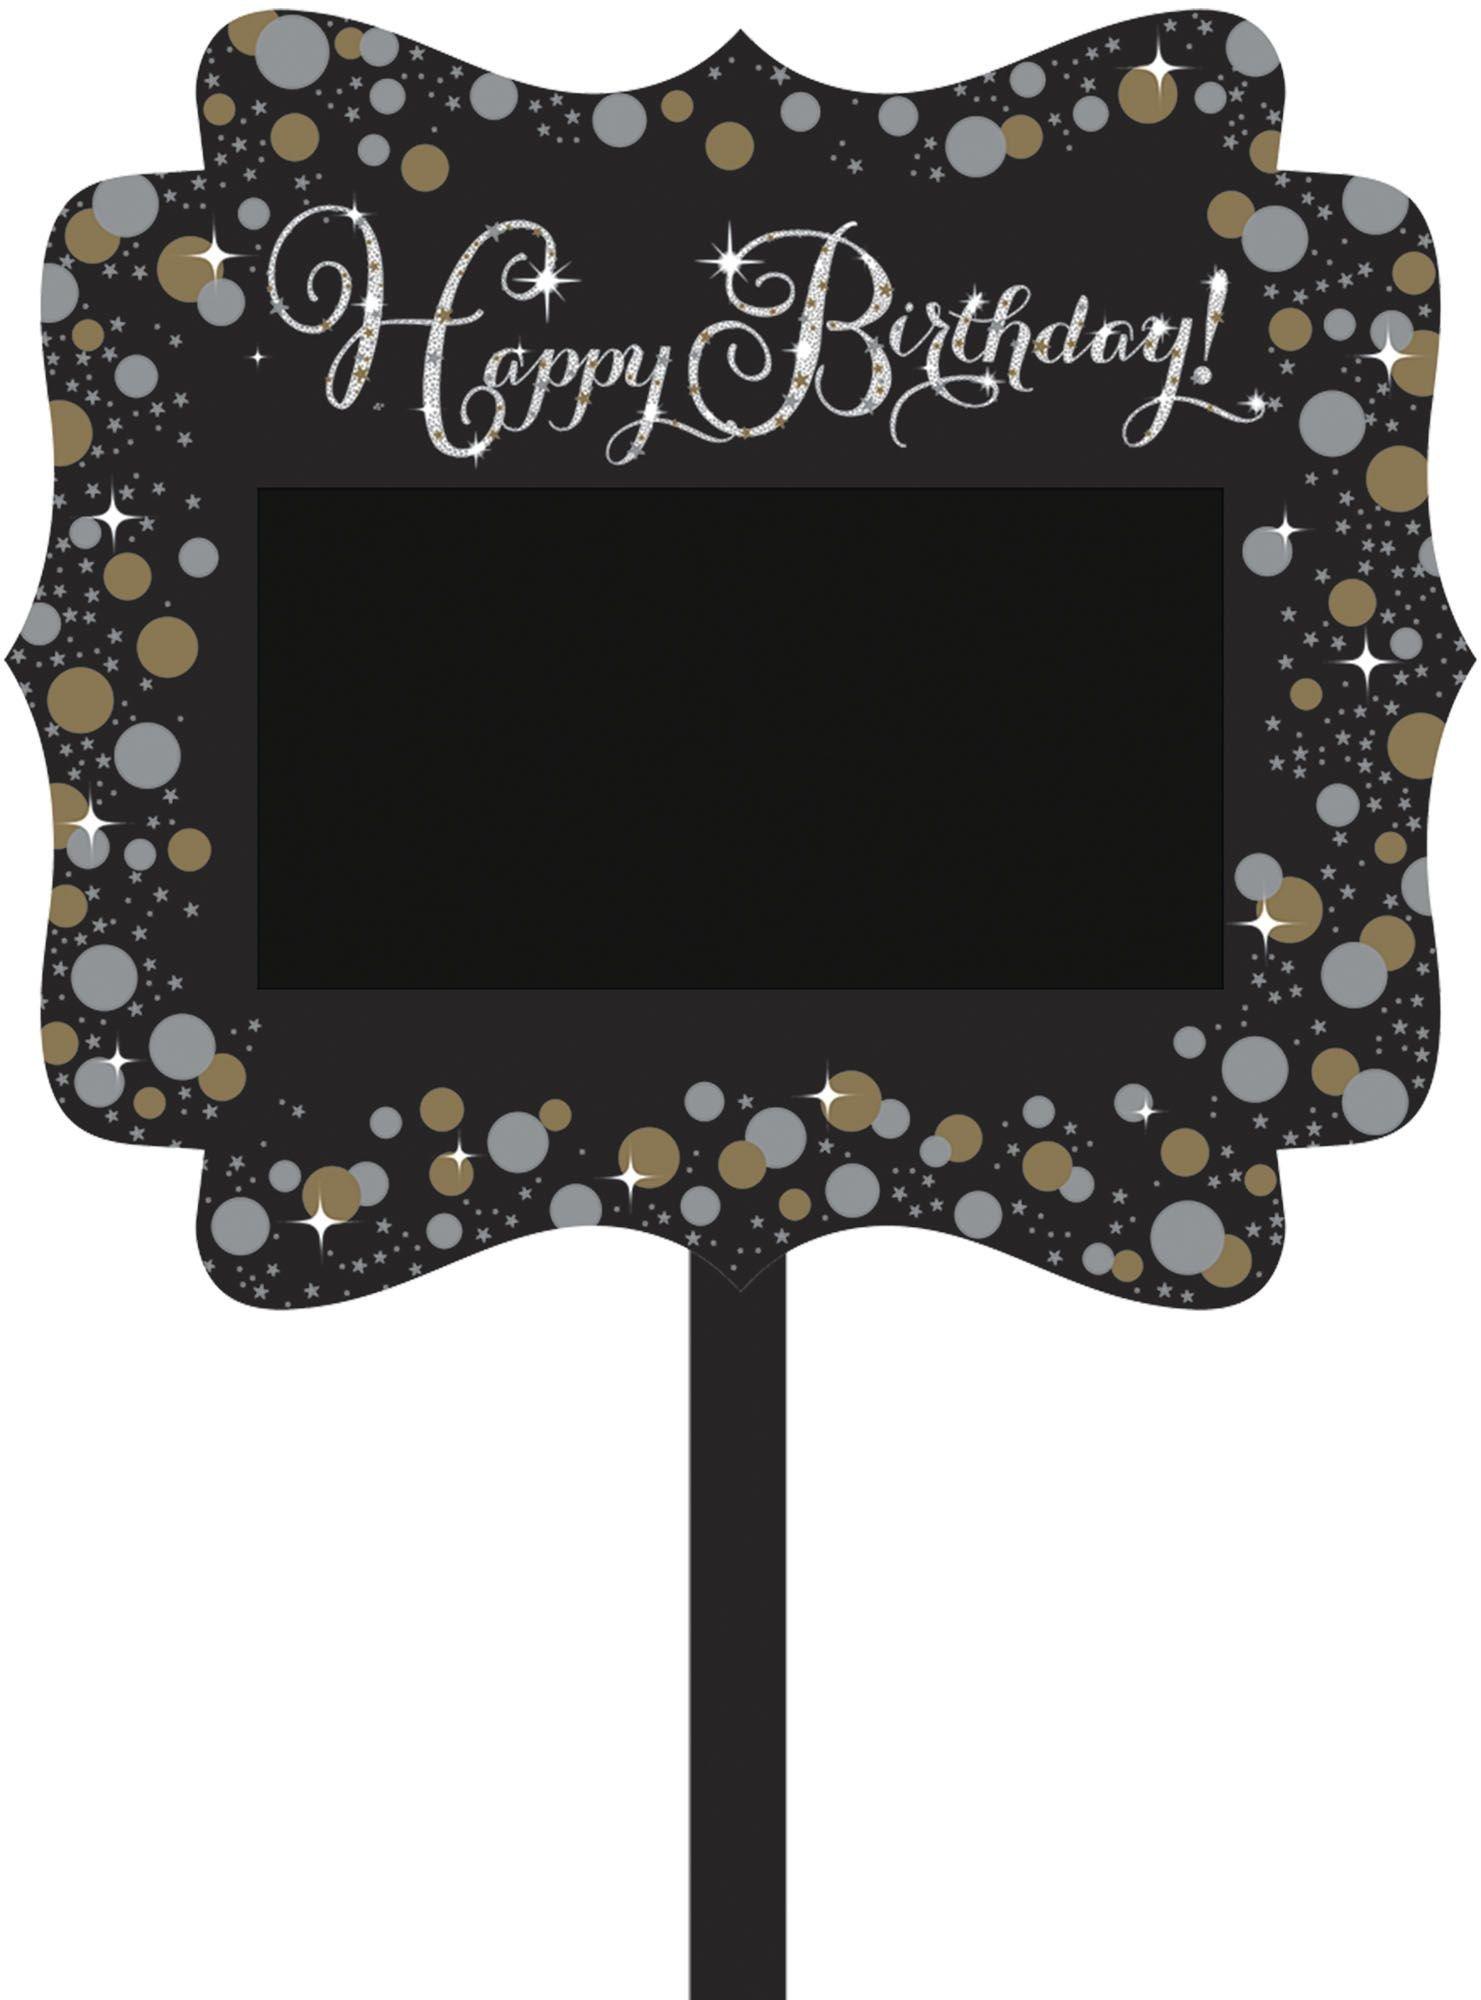 Sparkling Celebration Happy Birthday Blank Yard Sign